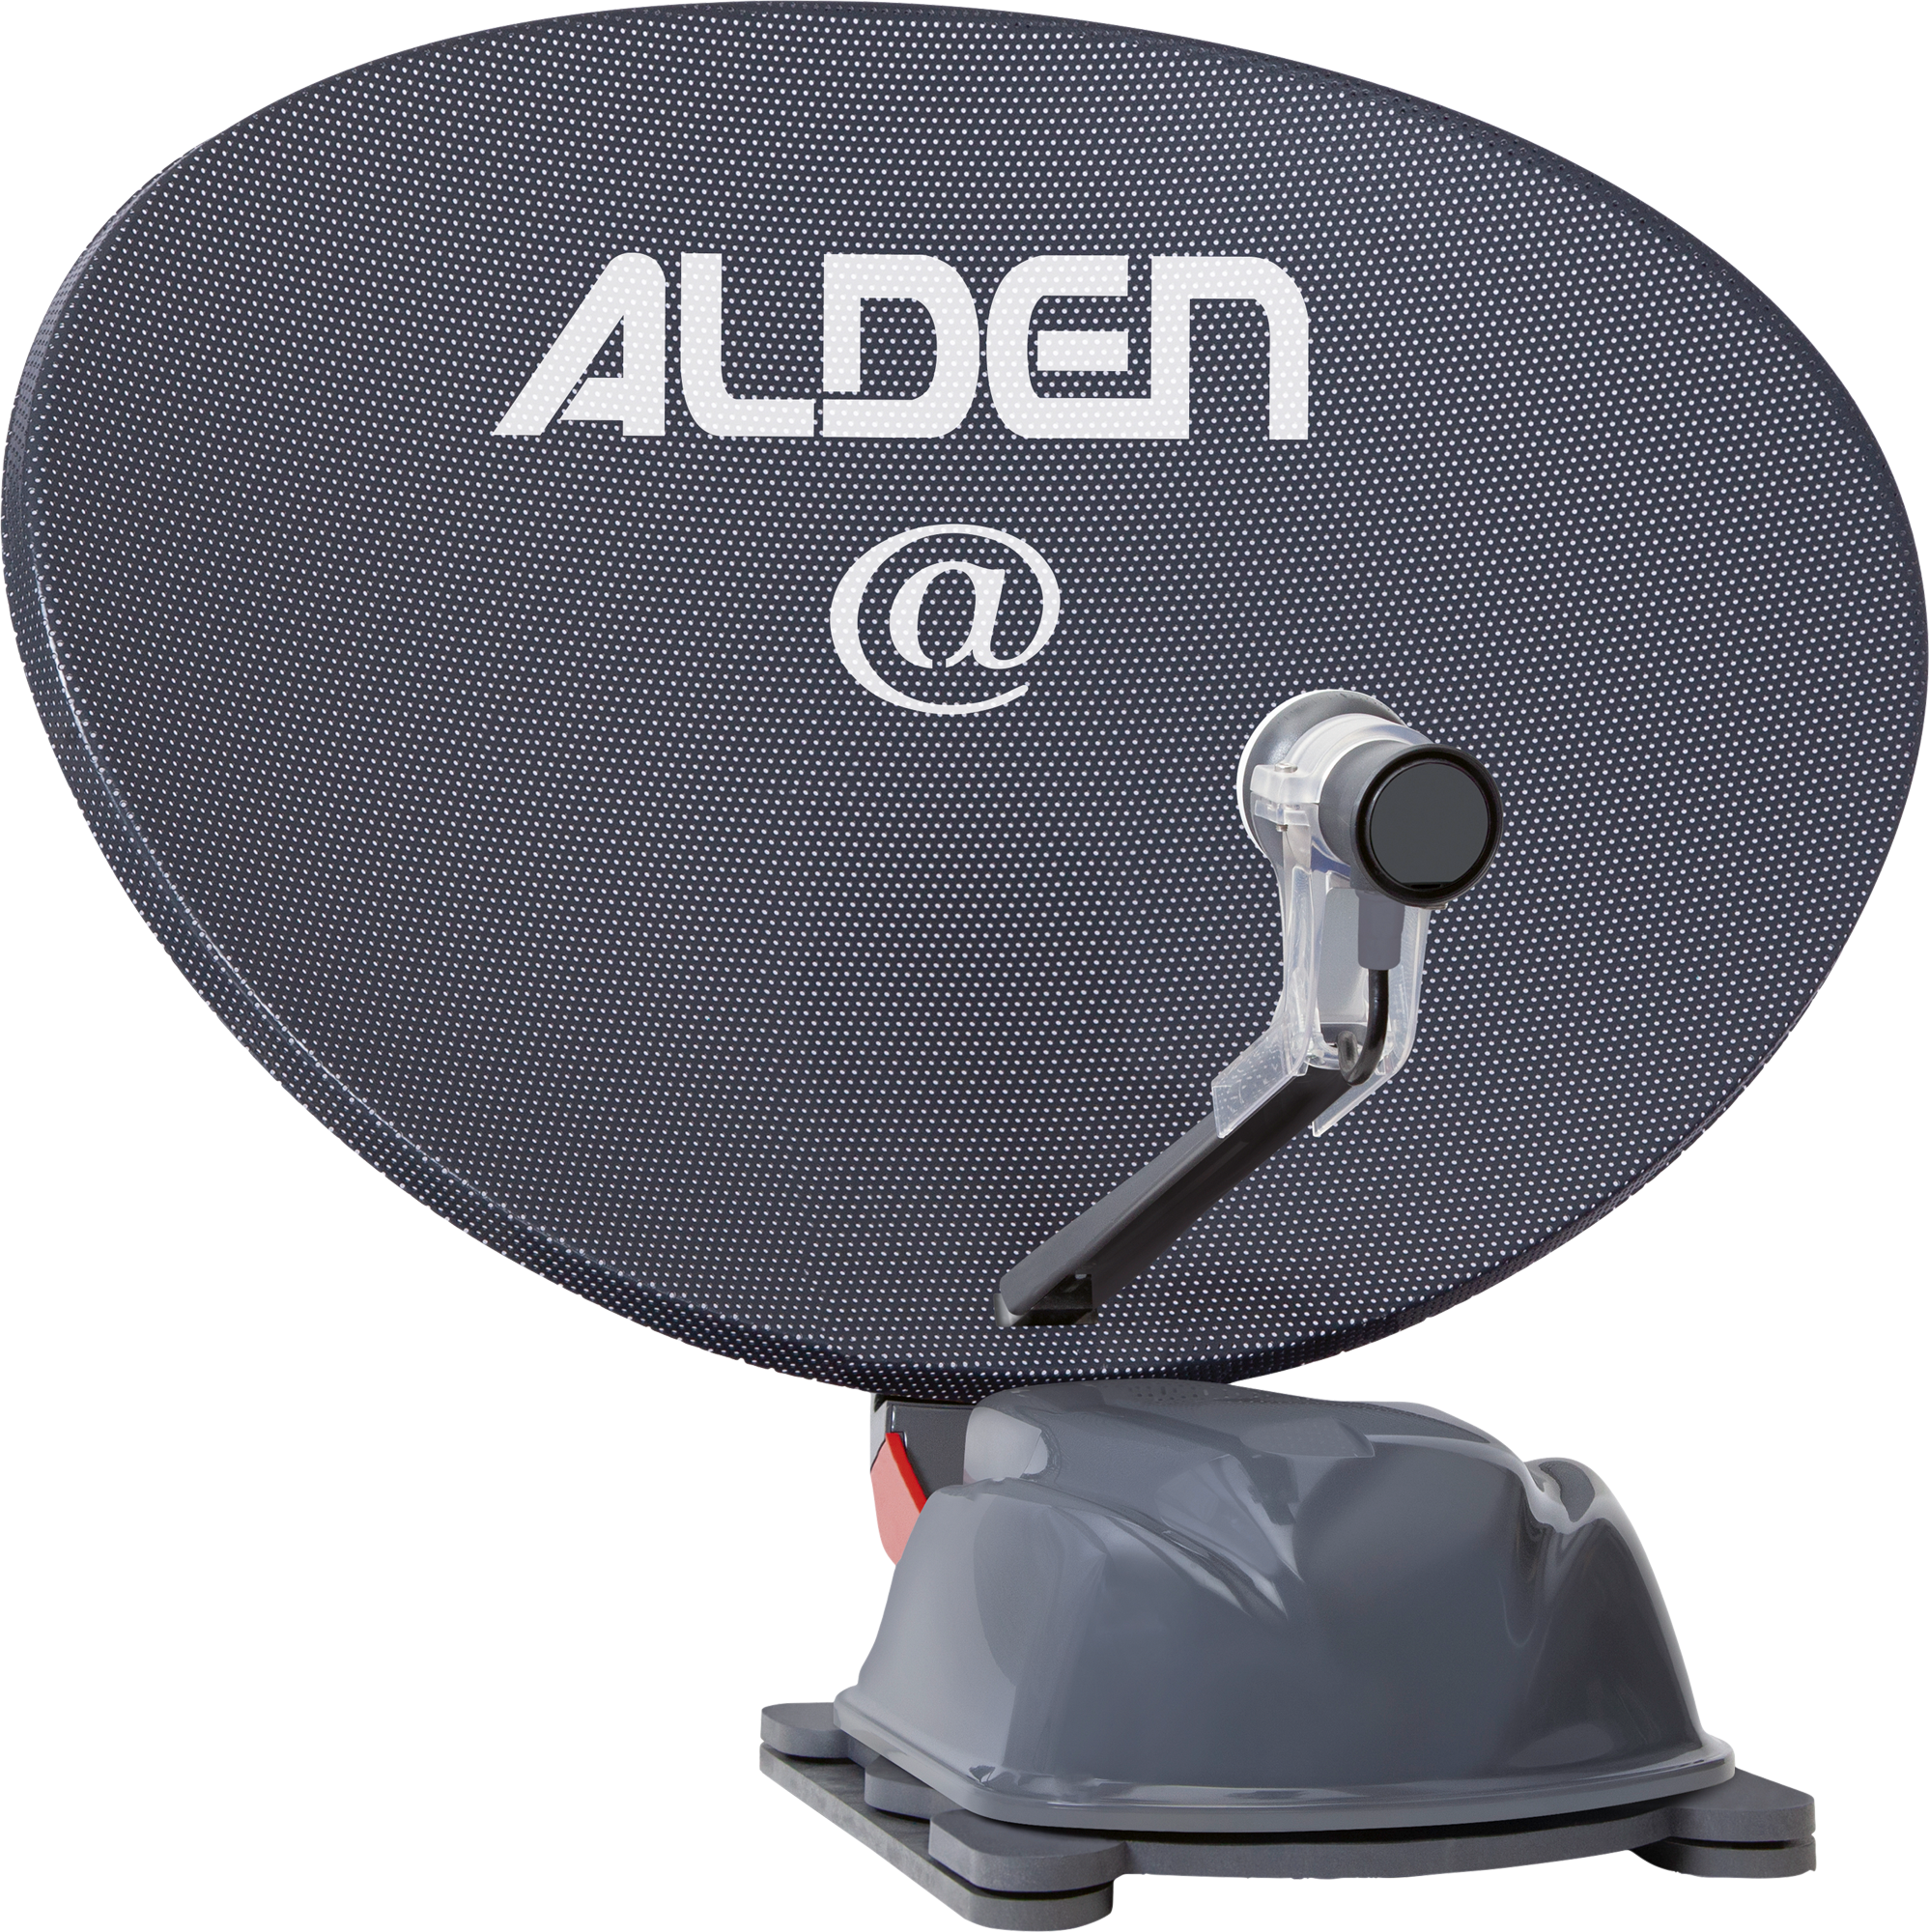 Alden AS2@ 80 HD Platinium vollautomatische Satellitenanlage inklusive S.S.C. HD Steuermodul / LTE Antenne / Smartwide LED TV 24 Zoll